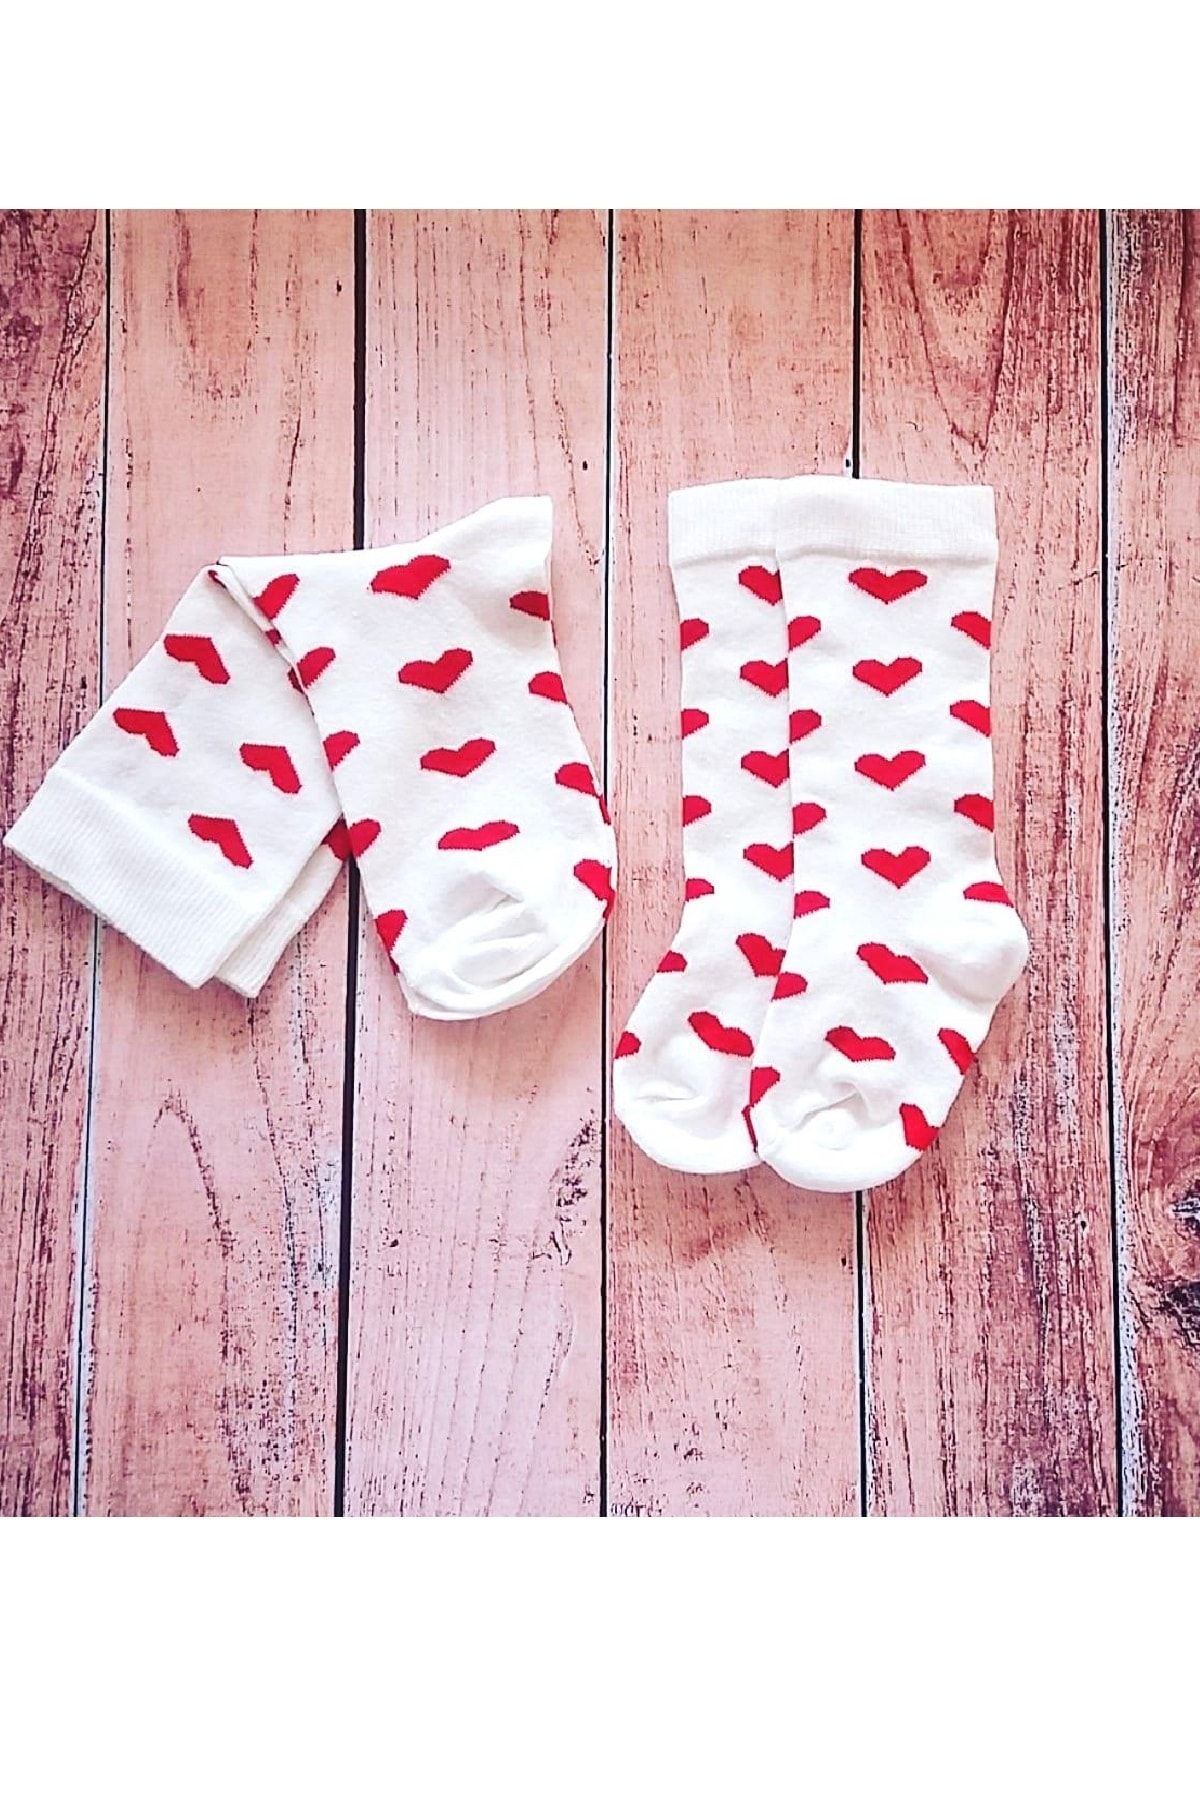 Asa Bebek Çocuk Anne Kız Kalp Desenli Kız Bebek Çorap Kombin Takım